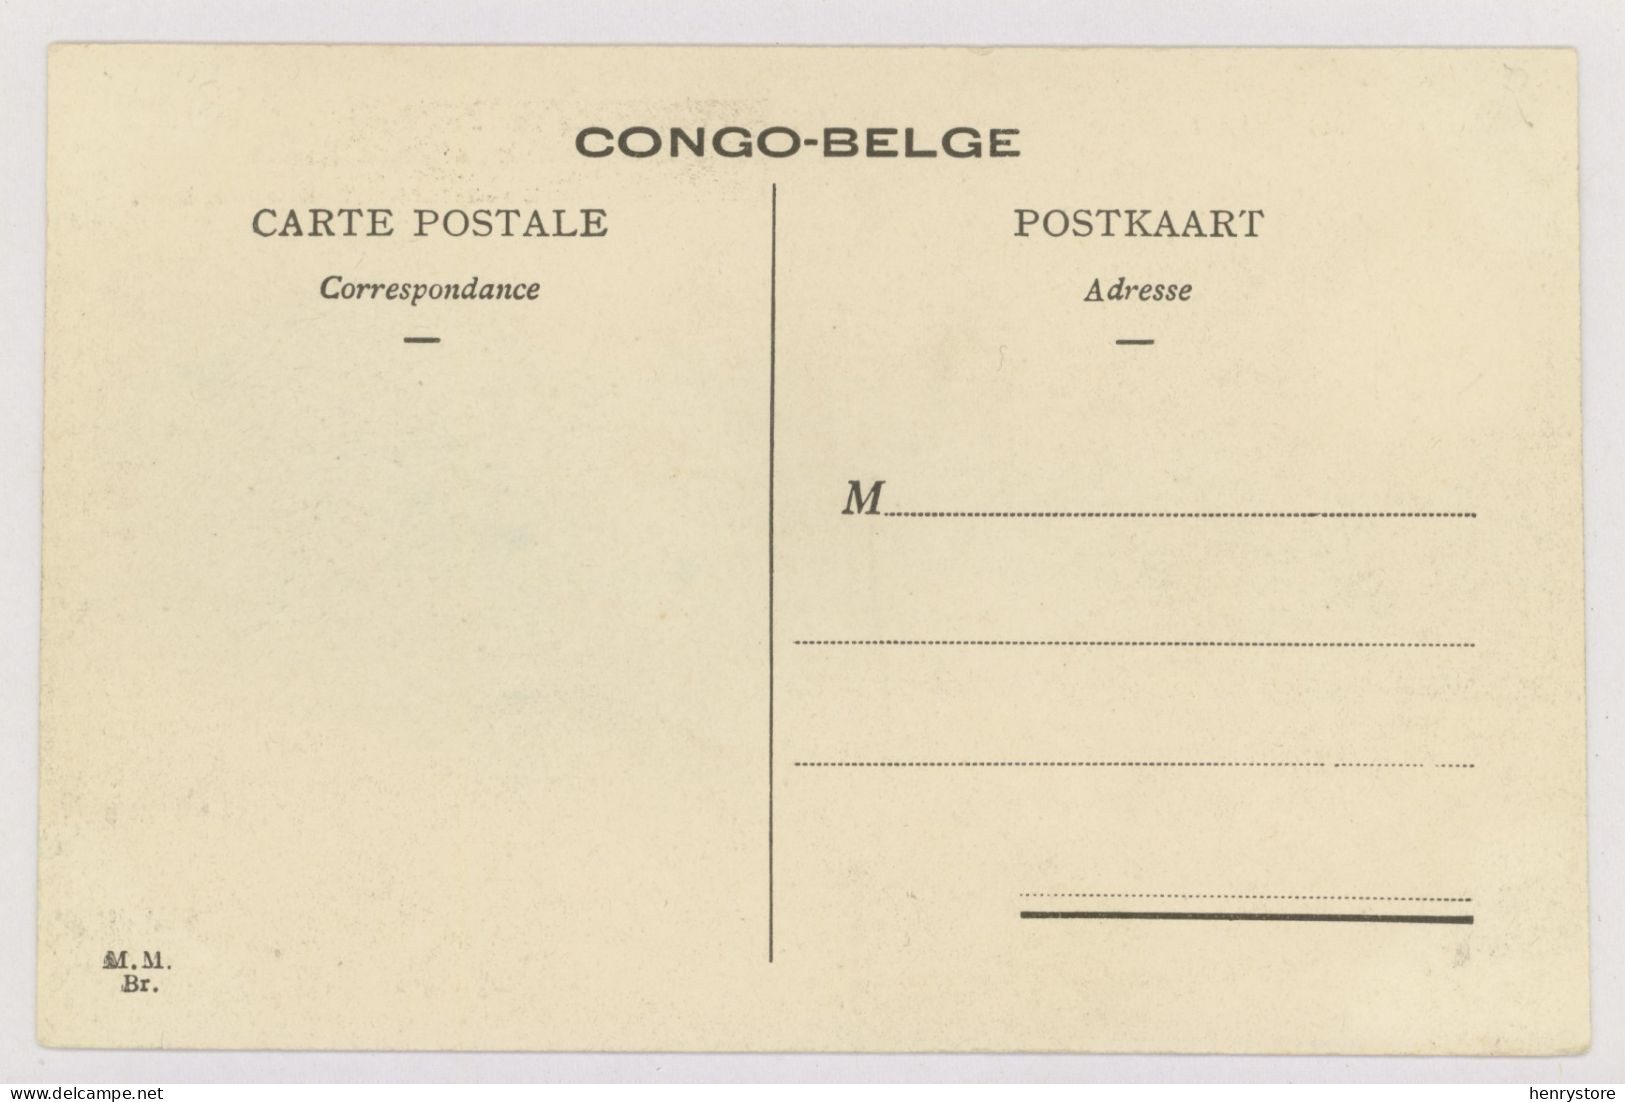 CONGO BELGE : Chemin De Fer Des Grands Lacs, Habitation En Construction à Kindu (z3583) - Belgian Congo